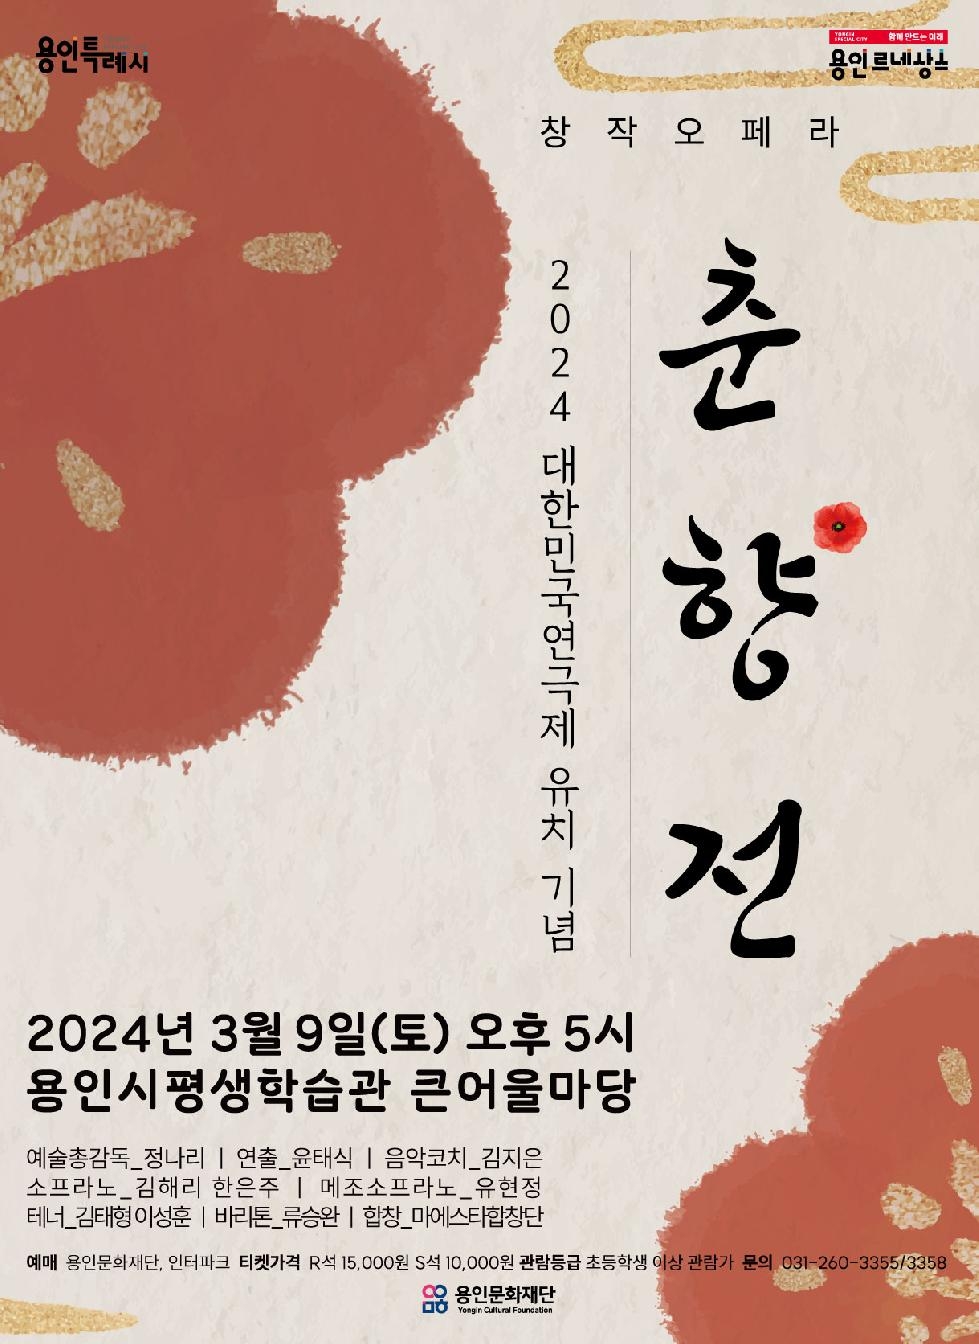 용인문화재단, 대한민국연극제 유치기념  창작오페라 [춘향전] 공연 개최